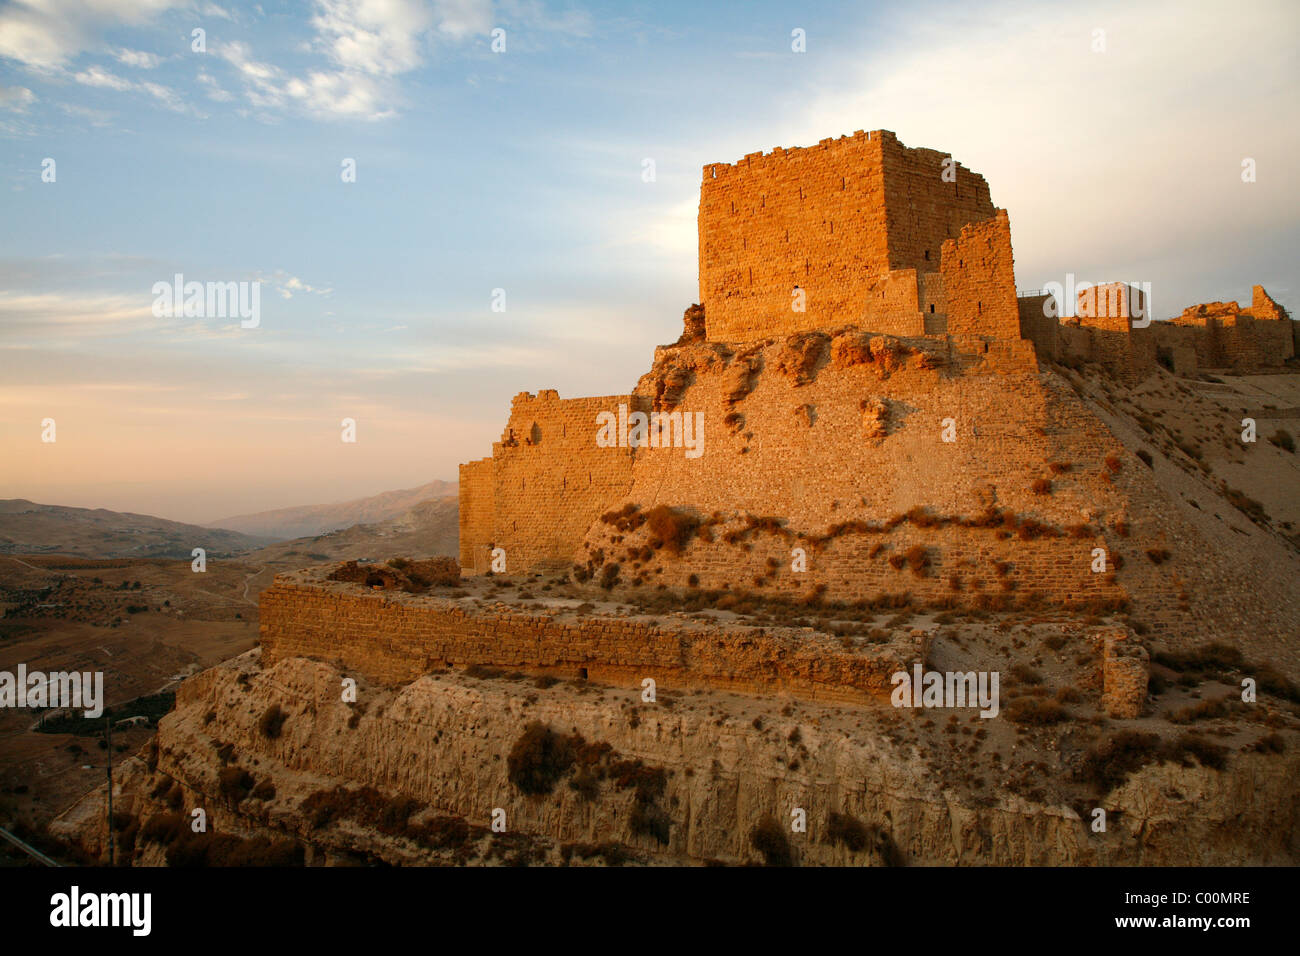 Karak castle, Karak, Jordan. Stock Photo